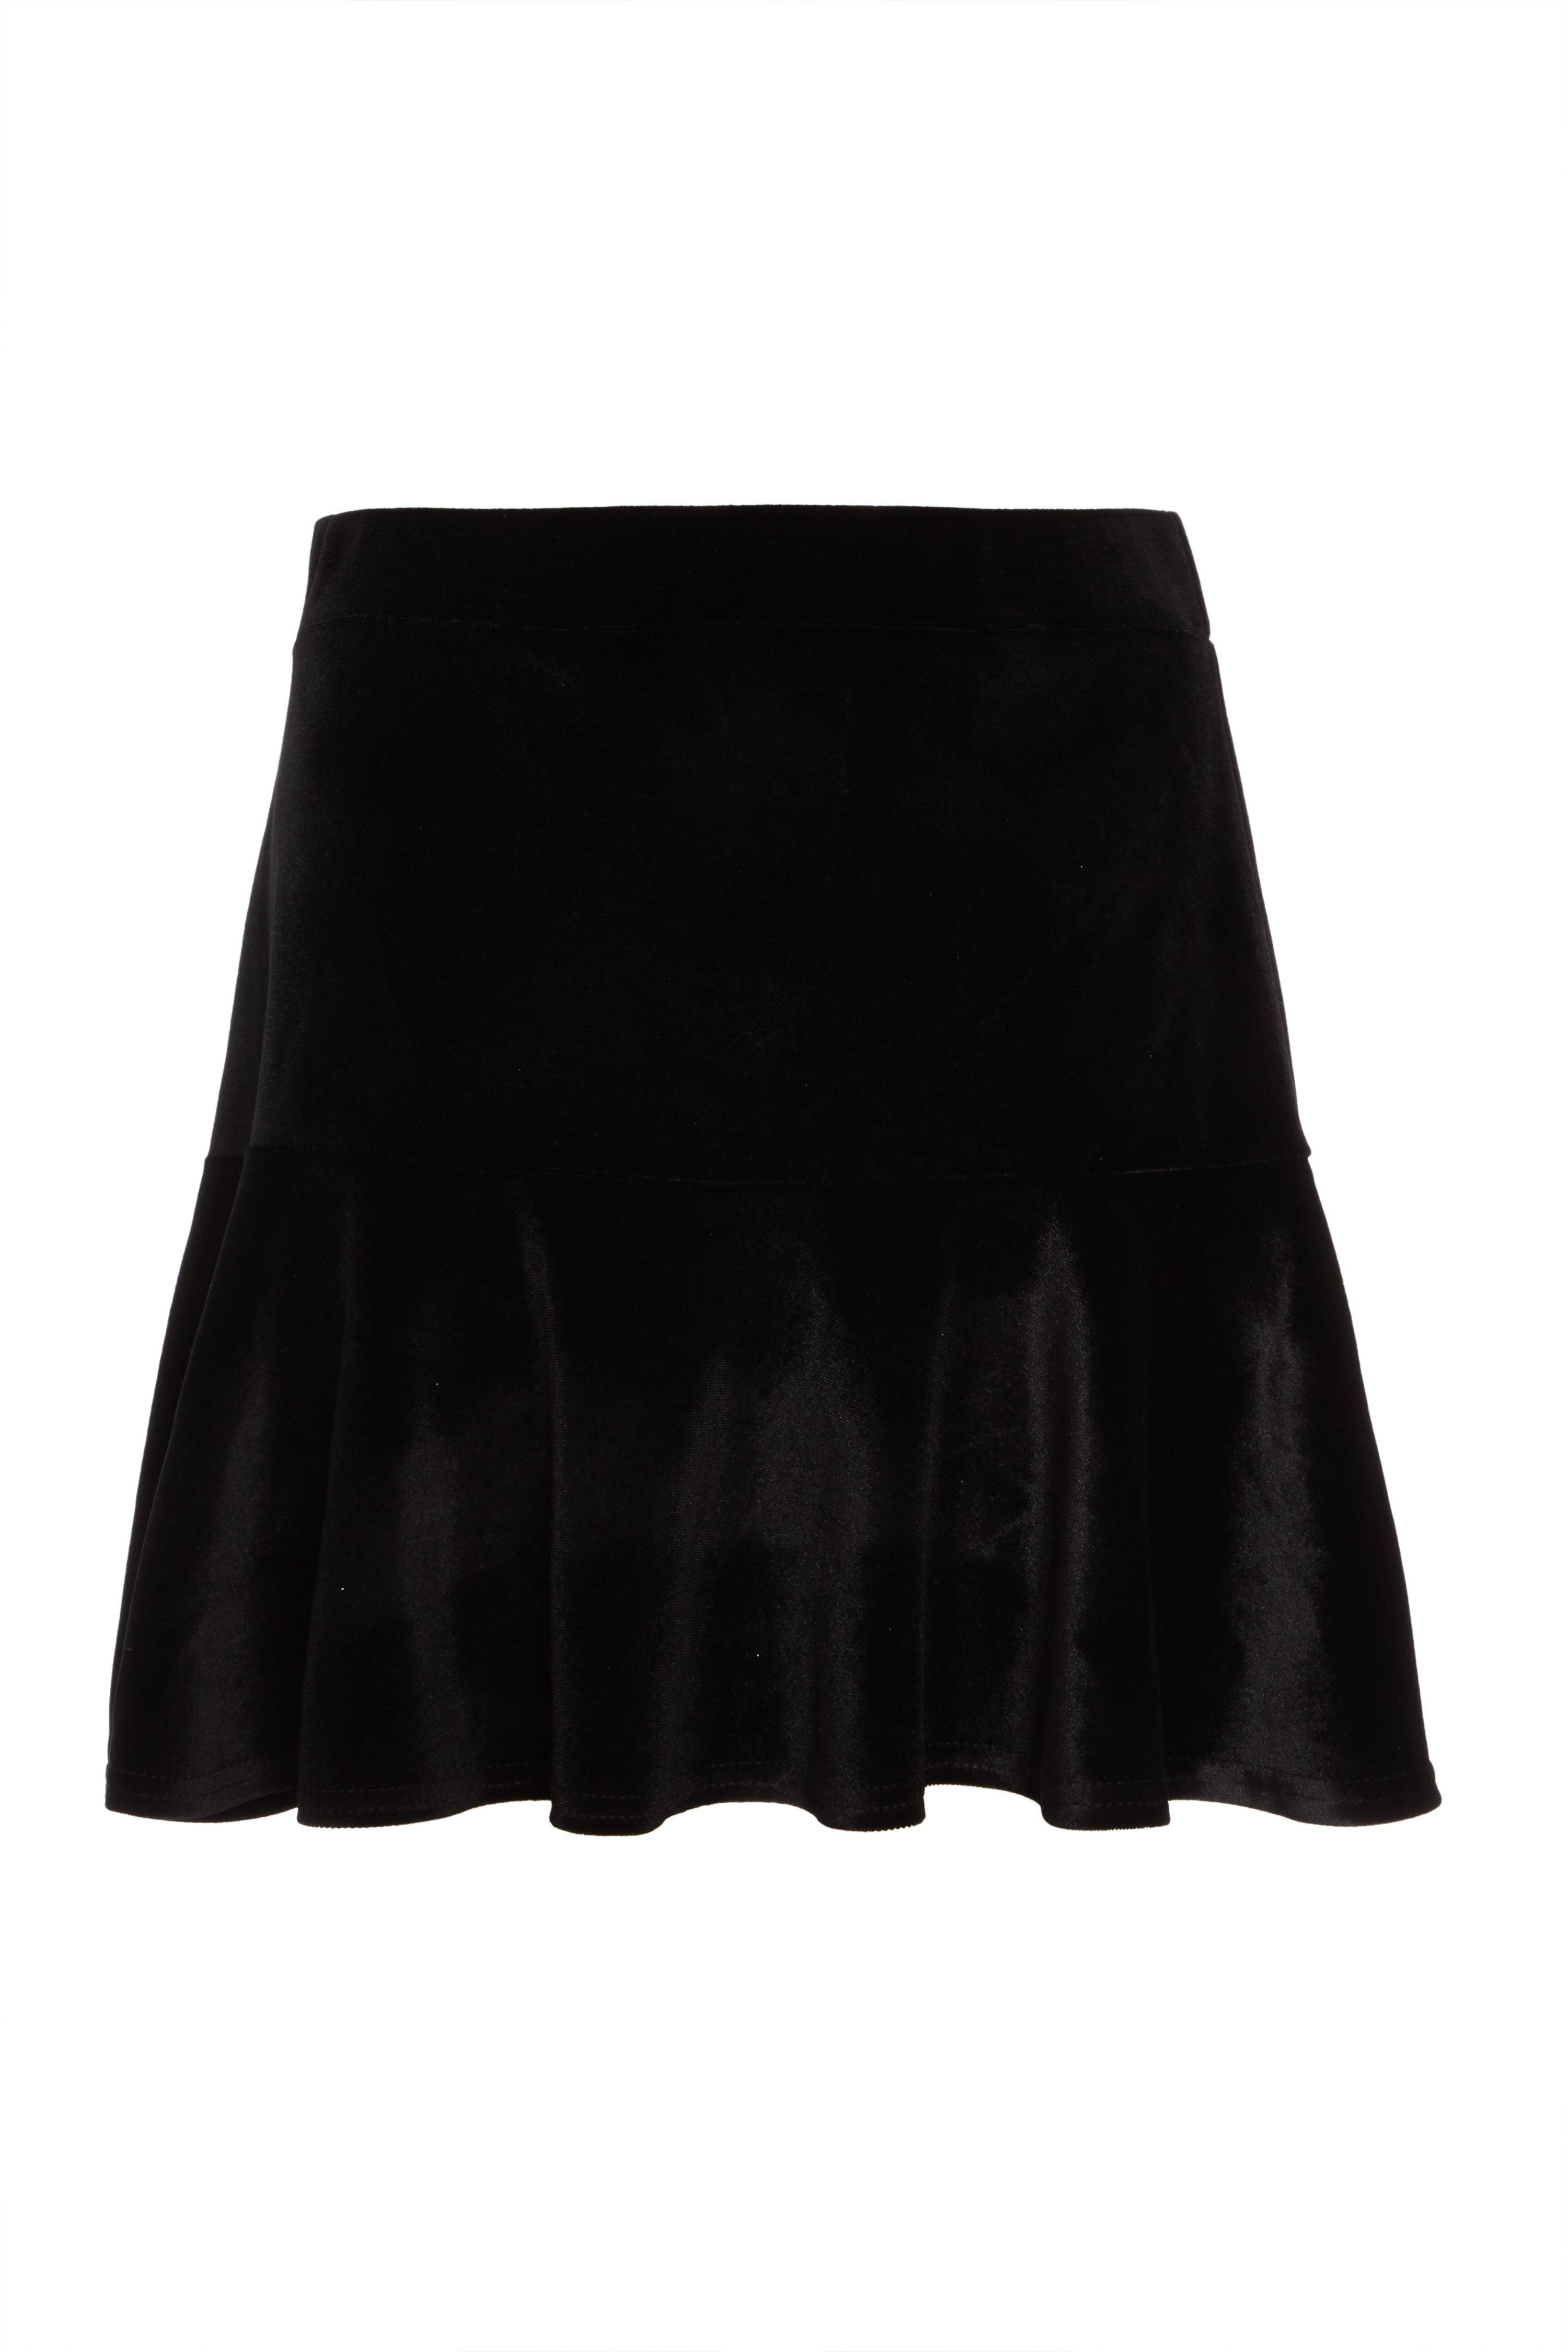 Black Velvet Frill Mini Skirt - Quiz Clothing